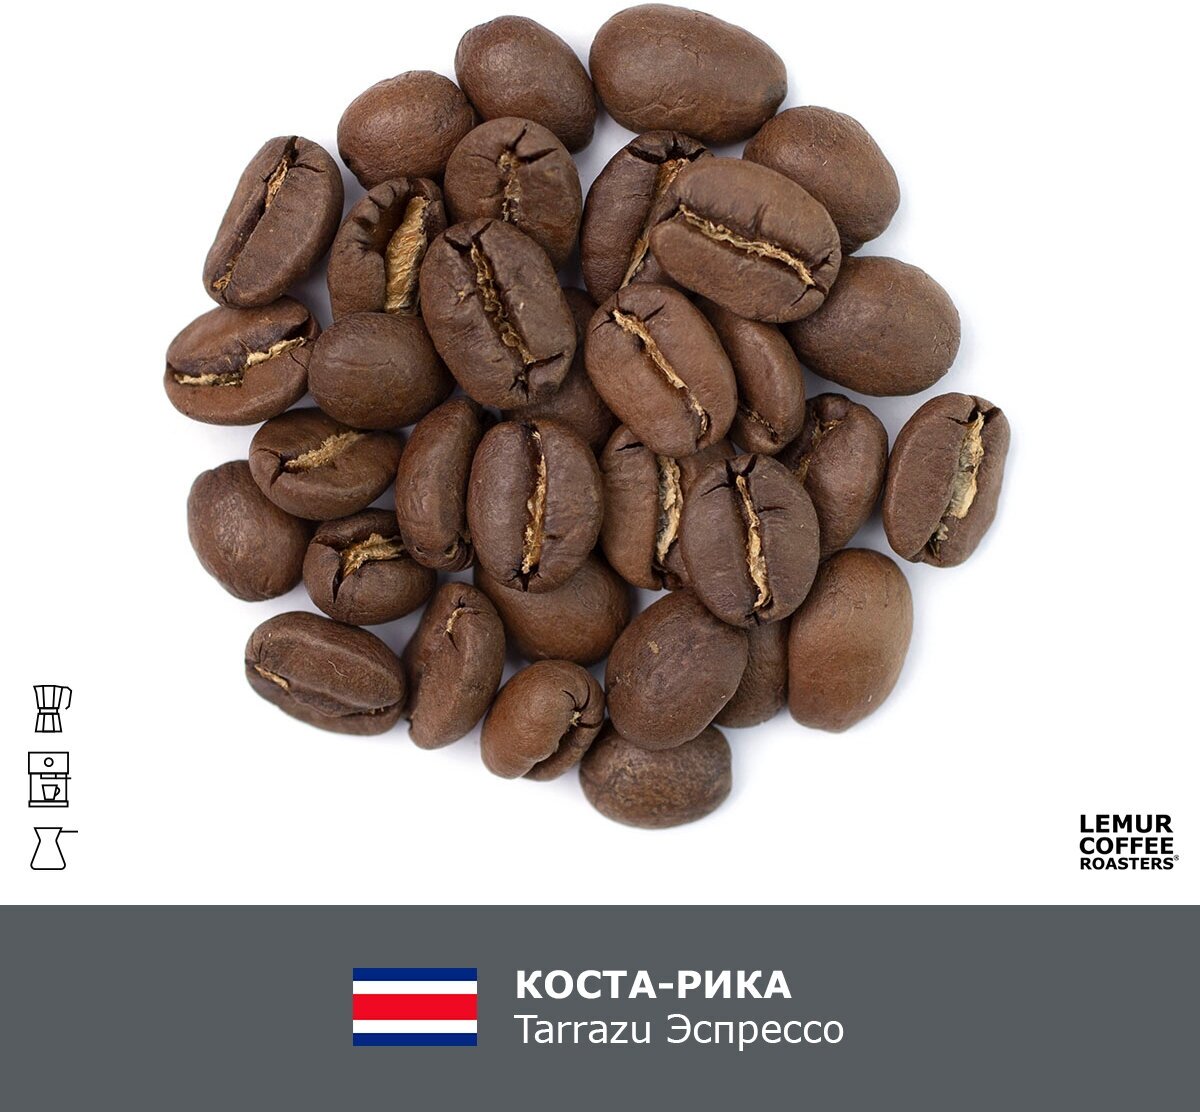 Свежеобжаренный кофе в зернах Коста-Рика Tarrazu Эспрессо Lemur Coffee Roasters, 1кг